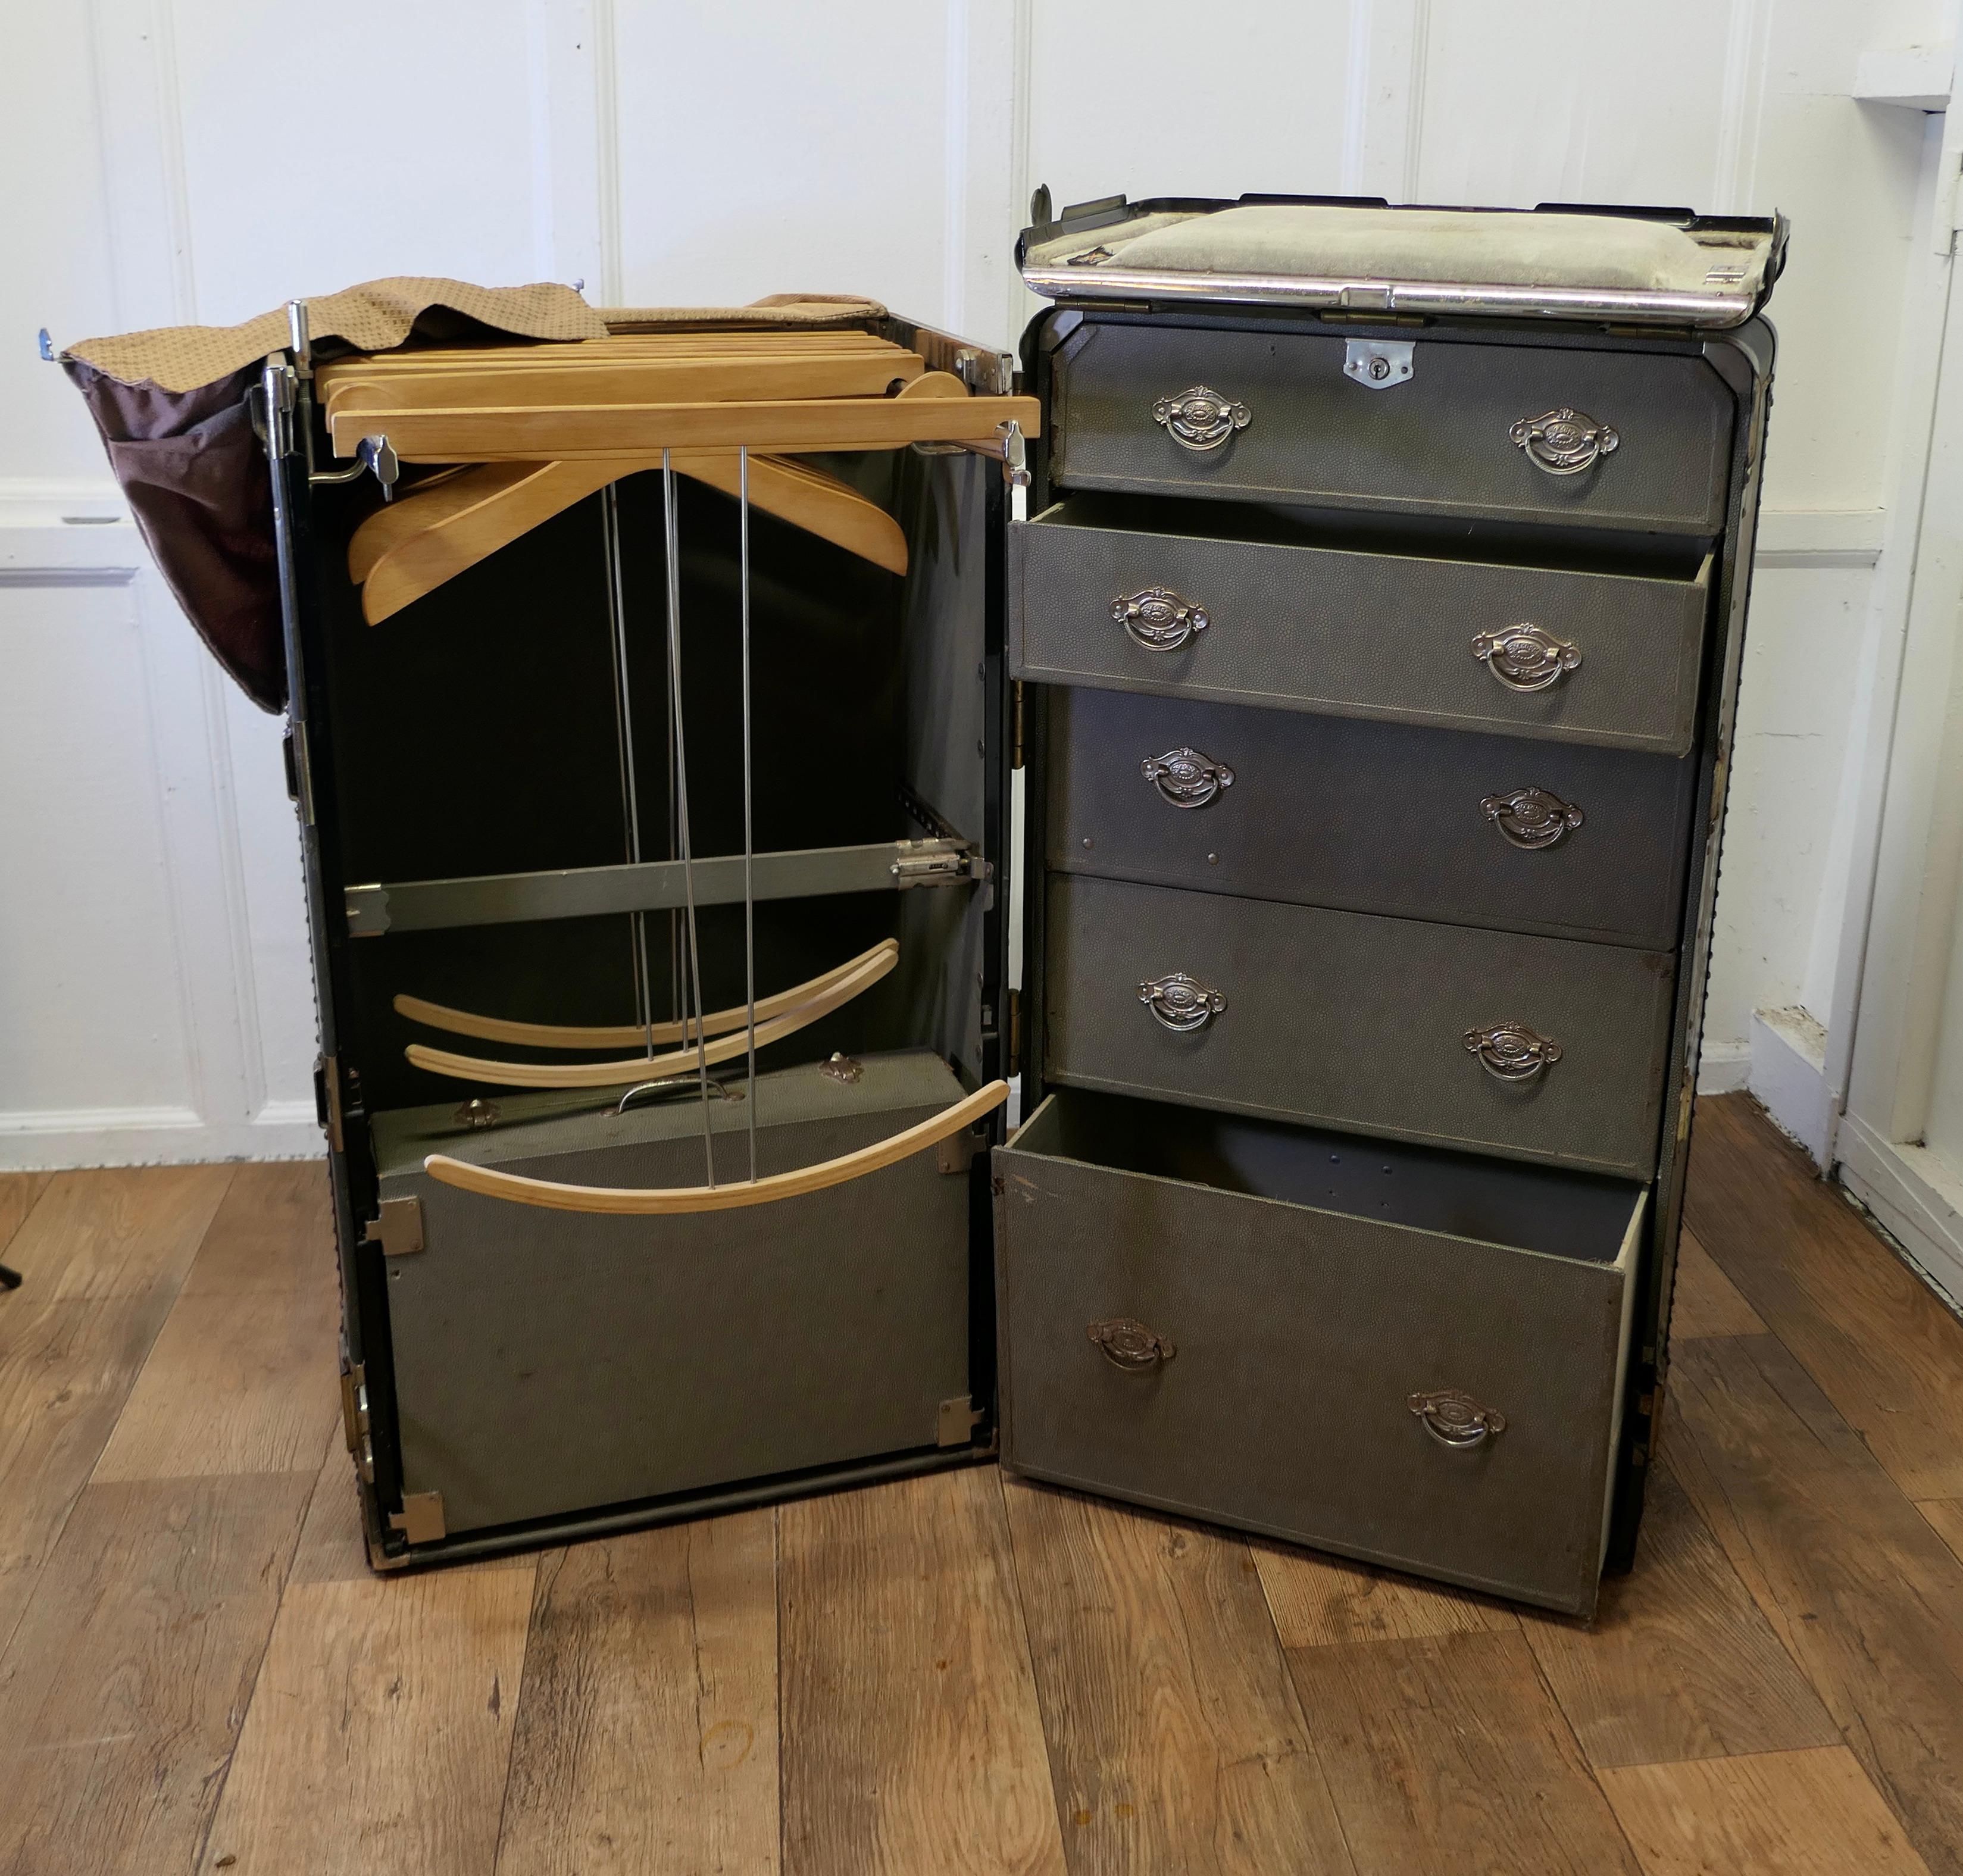 Art Deco Dampfer-Koffer- oder Cabin-Kleiderschrank von Hartman Luggage Co.

Anfang des 20. Jahrhunderts Estate Wardrobe Trunk von Beckets Leather Goods Company Washington DC
Die Truhe ist komplett, es öffnet sich voll auf 5 Schubladen auf der einen